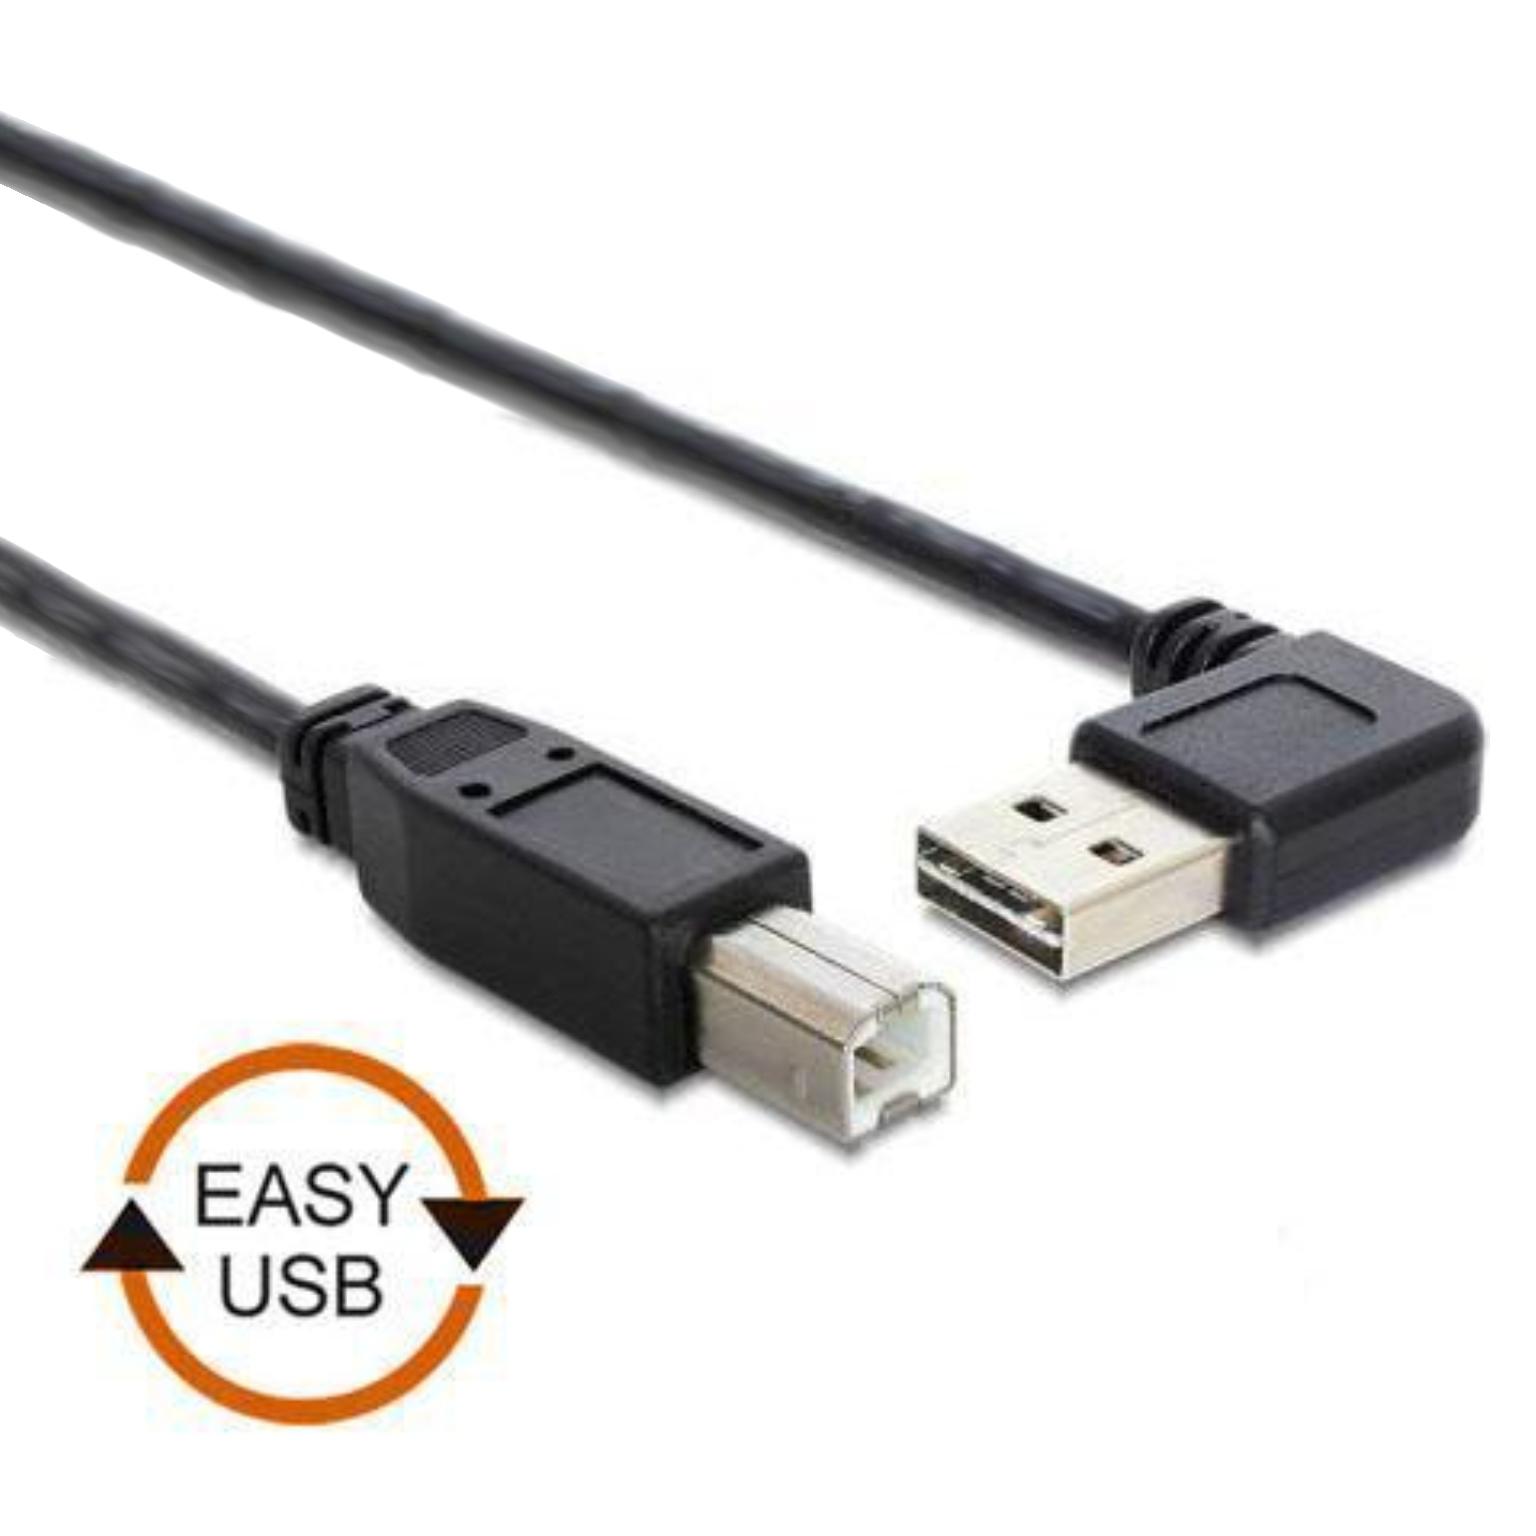 uitroepen Menstruatie Slechte factor Easy USB Printerkabel - USB Printerkabel - Haaks, Type: 2.0 - HighSpeed,  Extra: USB aansluiting bruikbaar van 2 kanten, Aansluiting 1: Easy USB A  male, Aansluiting 2: USB B male, 0.5 meter.